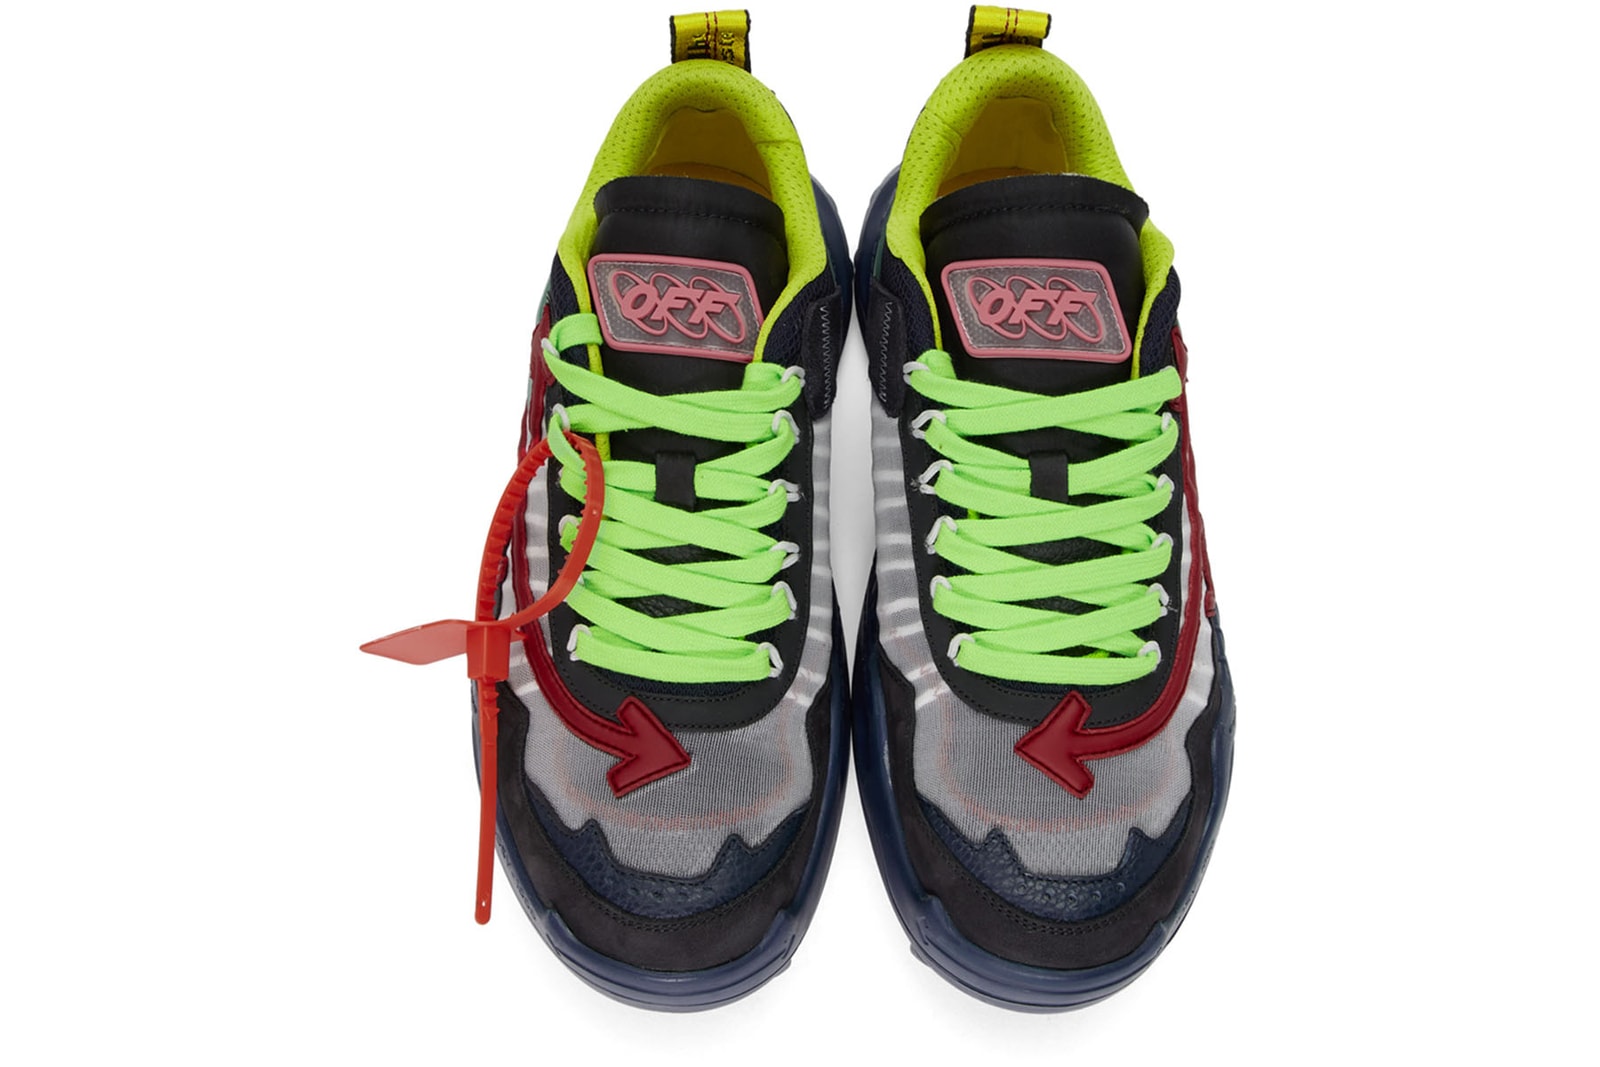 今冬の狙い目セールスニーカー 7 選 Nike Gyakusou Balenciaga VETEMENTS Reebok OAMC adidas Originals Prada Cloudbust adidas Originals x Pharrell Williams Off-White™️ Odsy-1000